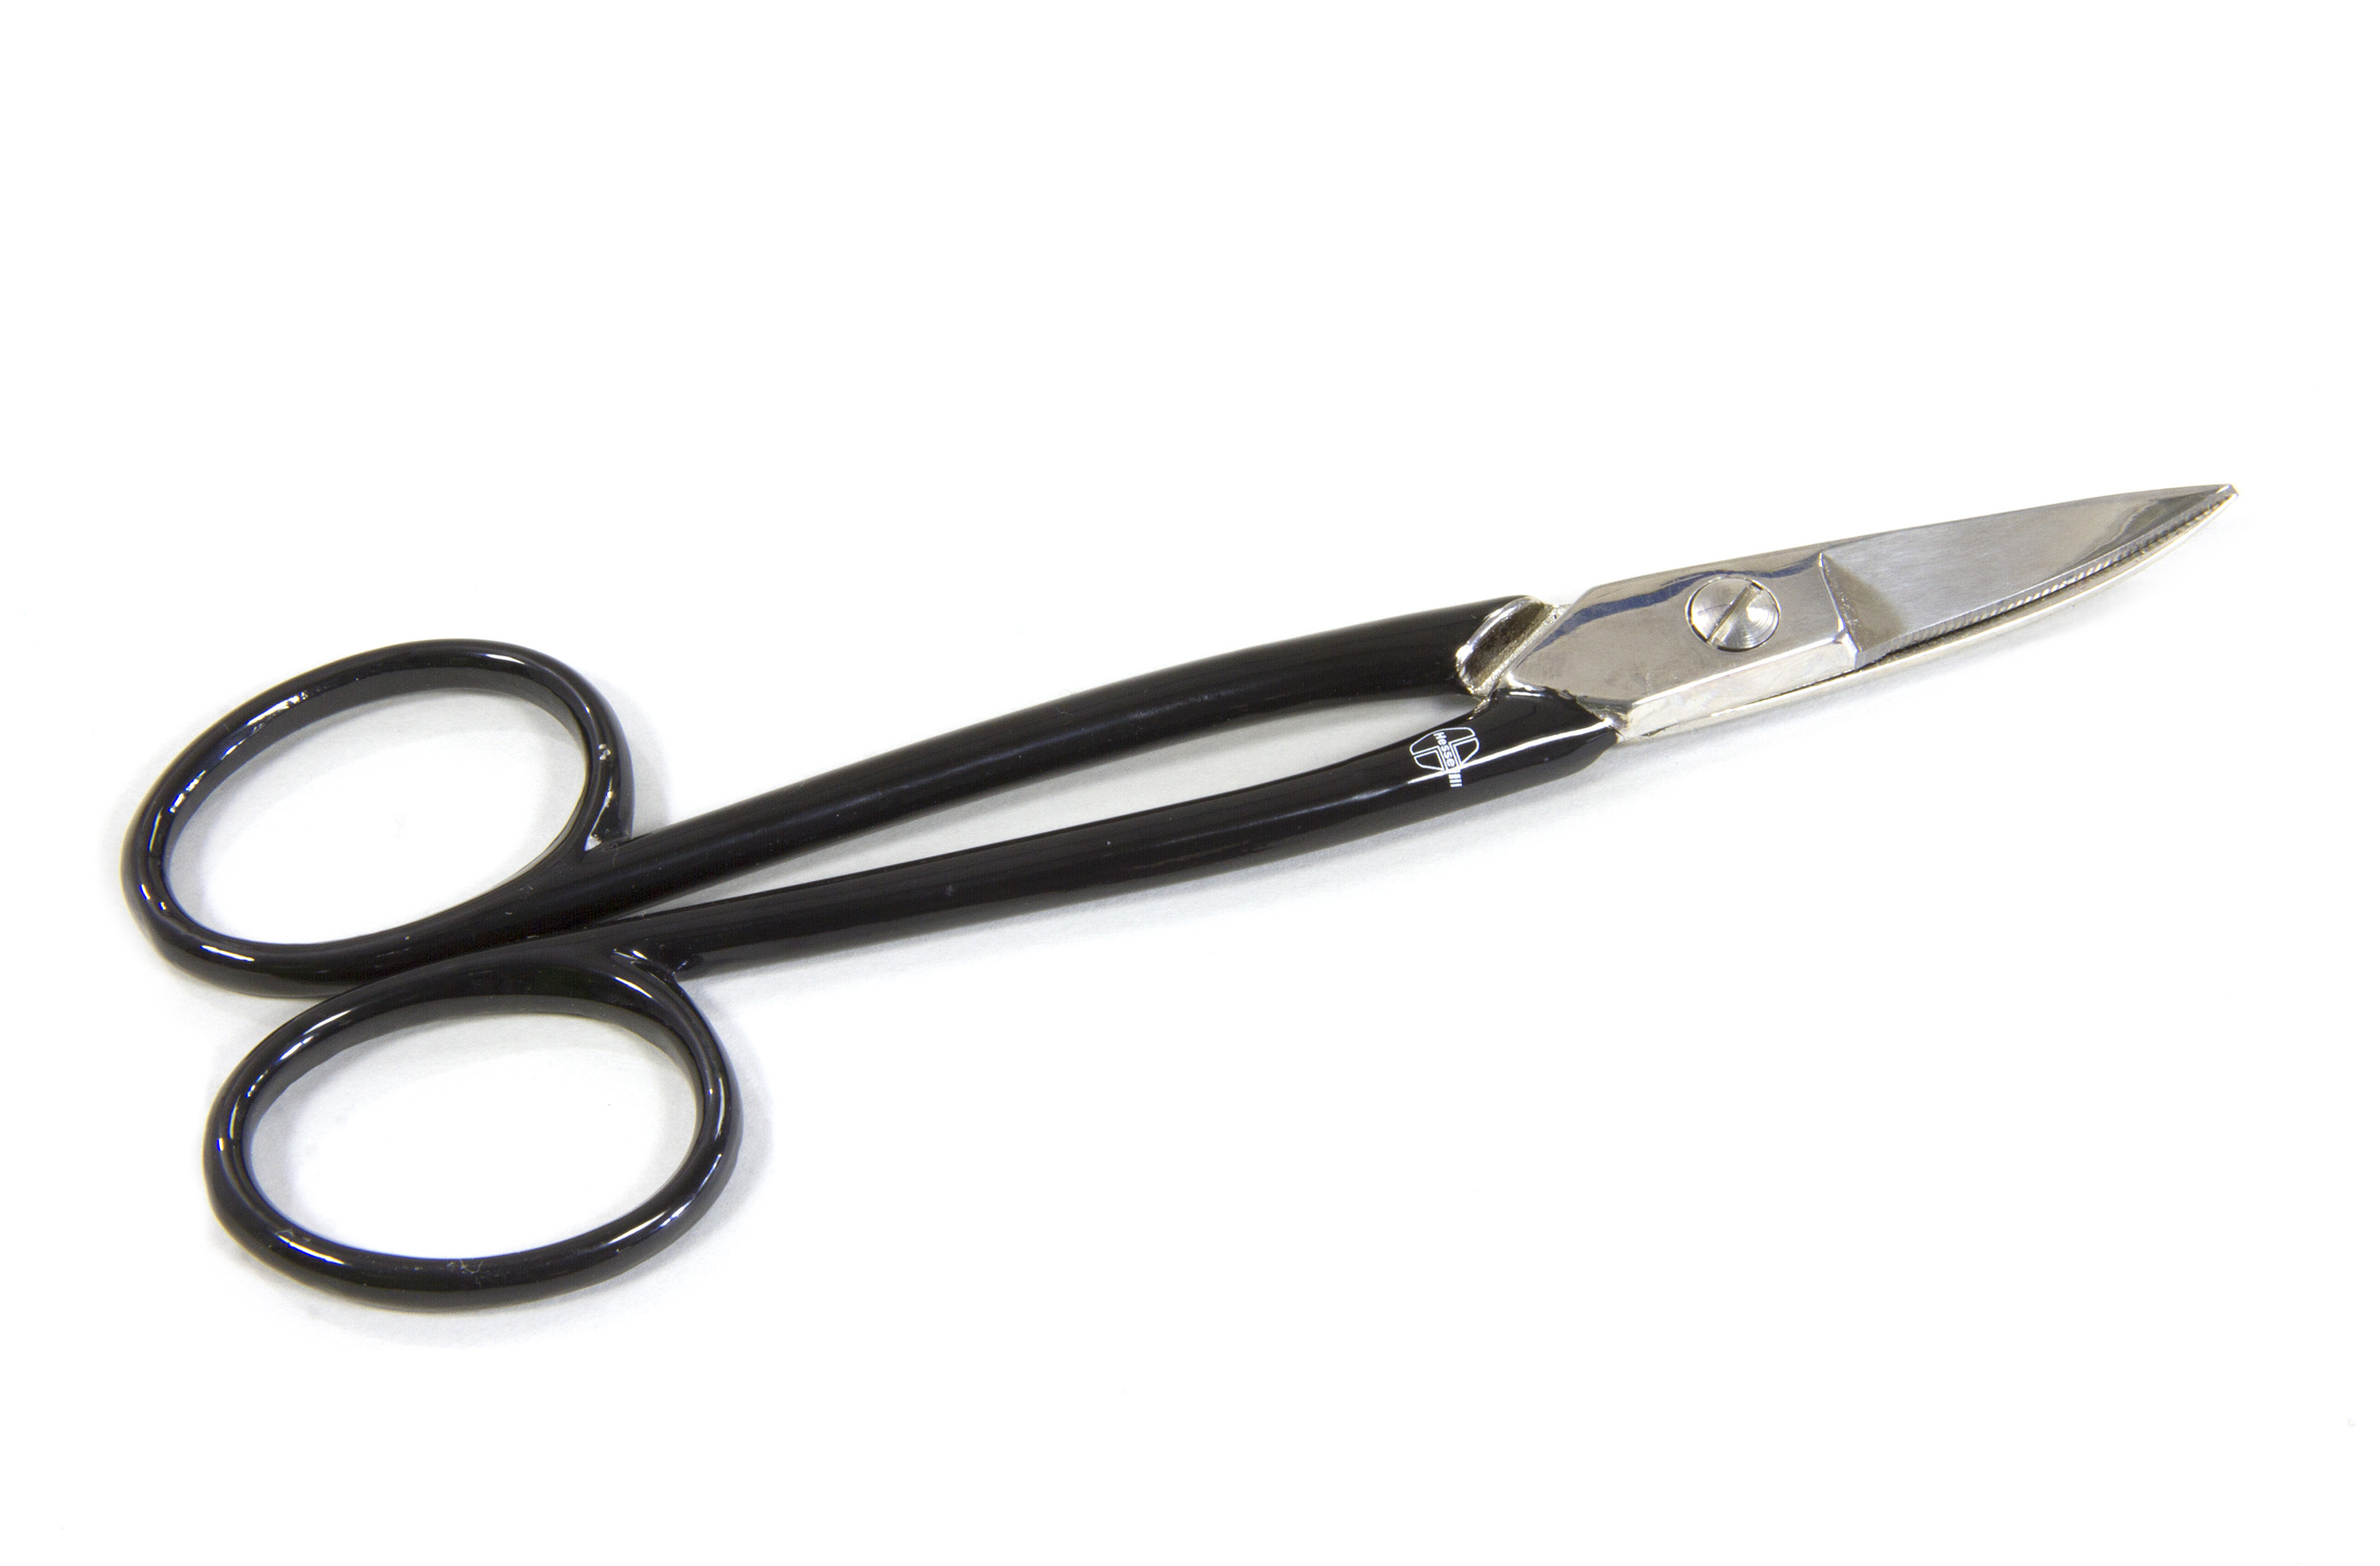 y6747/01 Model scissors with bent tips